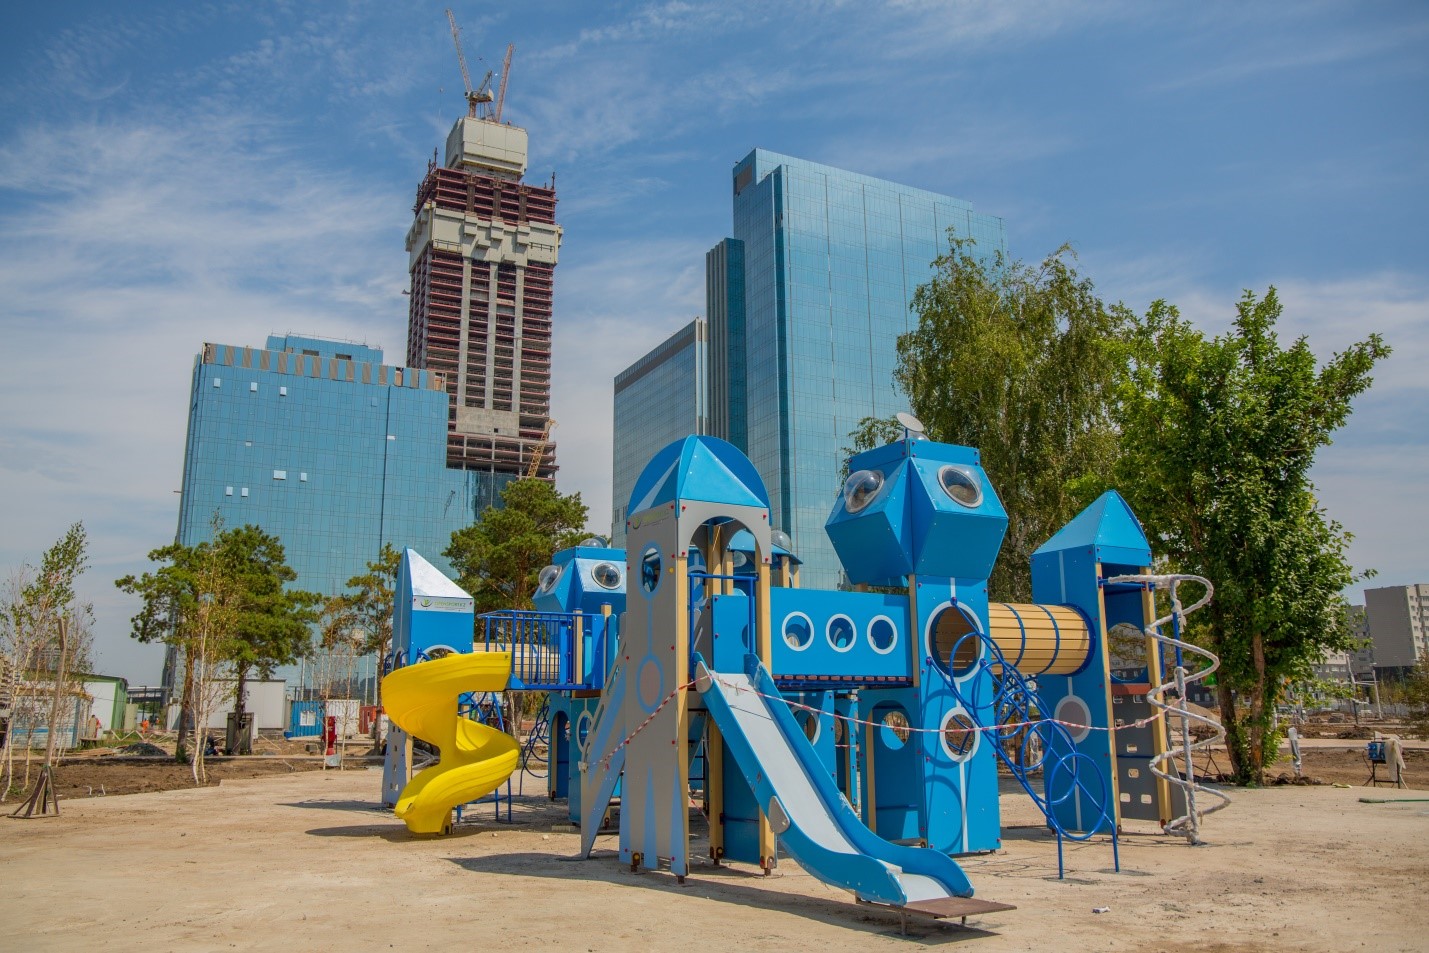 Линейный парк встретит астанчан детскими игровыми комплексами, сухим фонтаном и другими сюрпризами